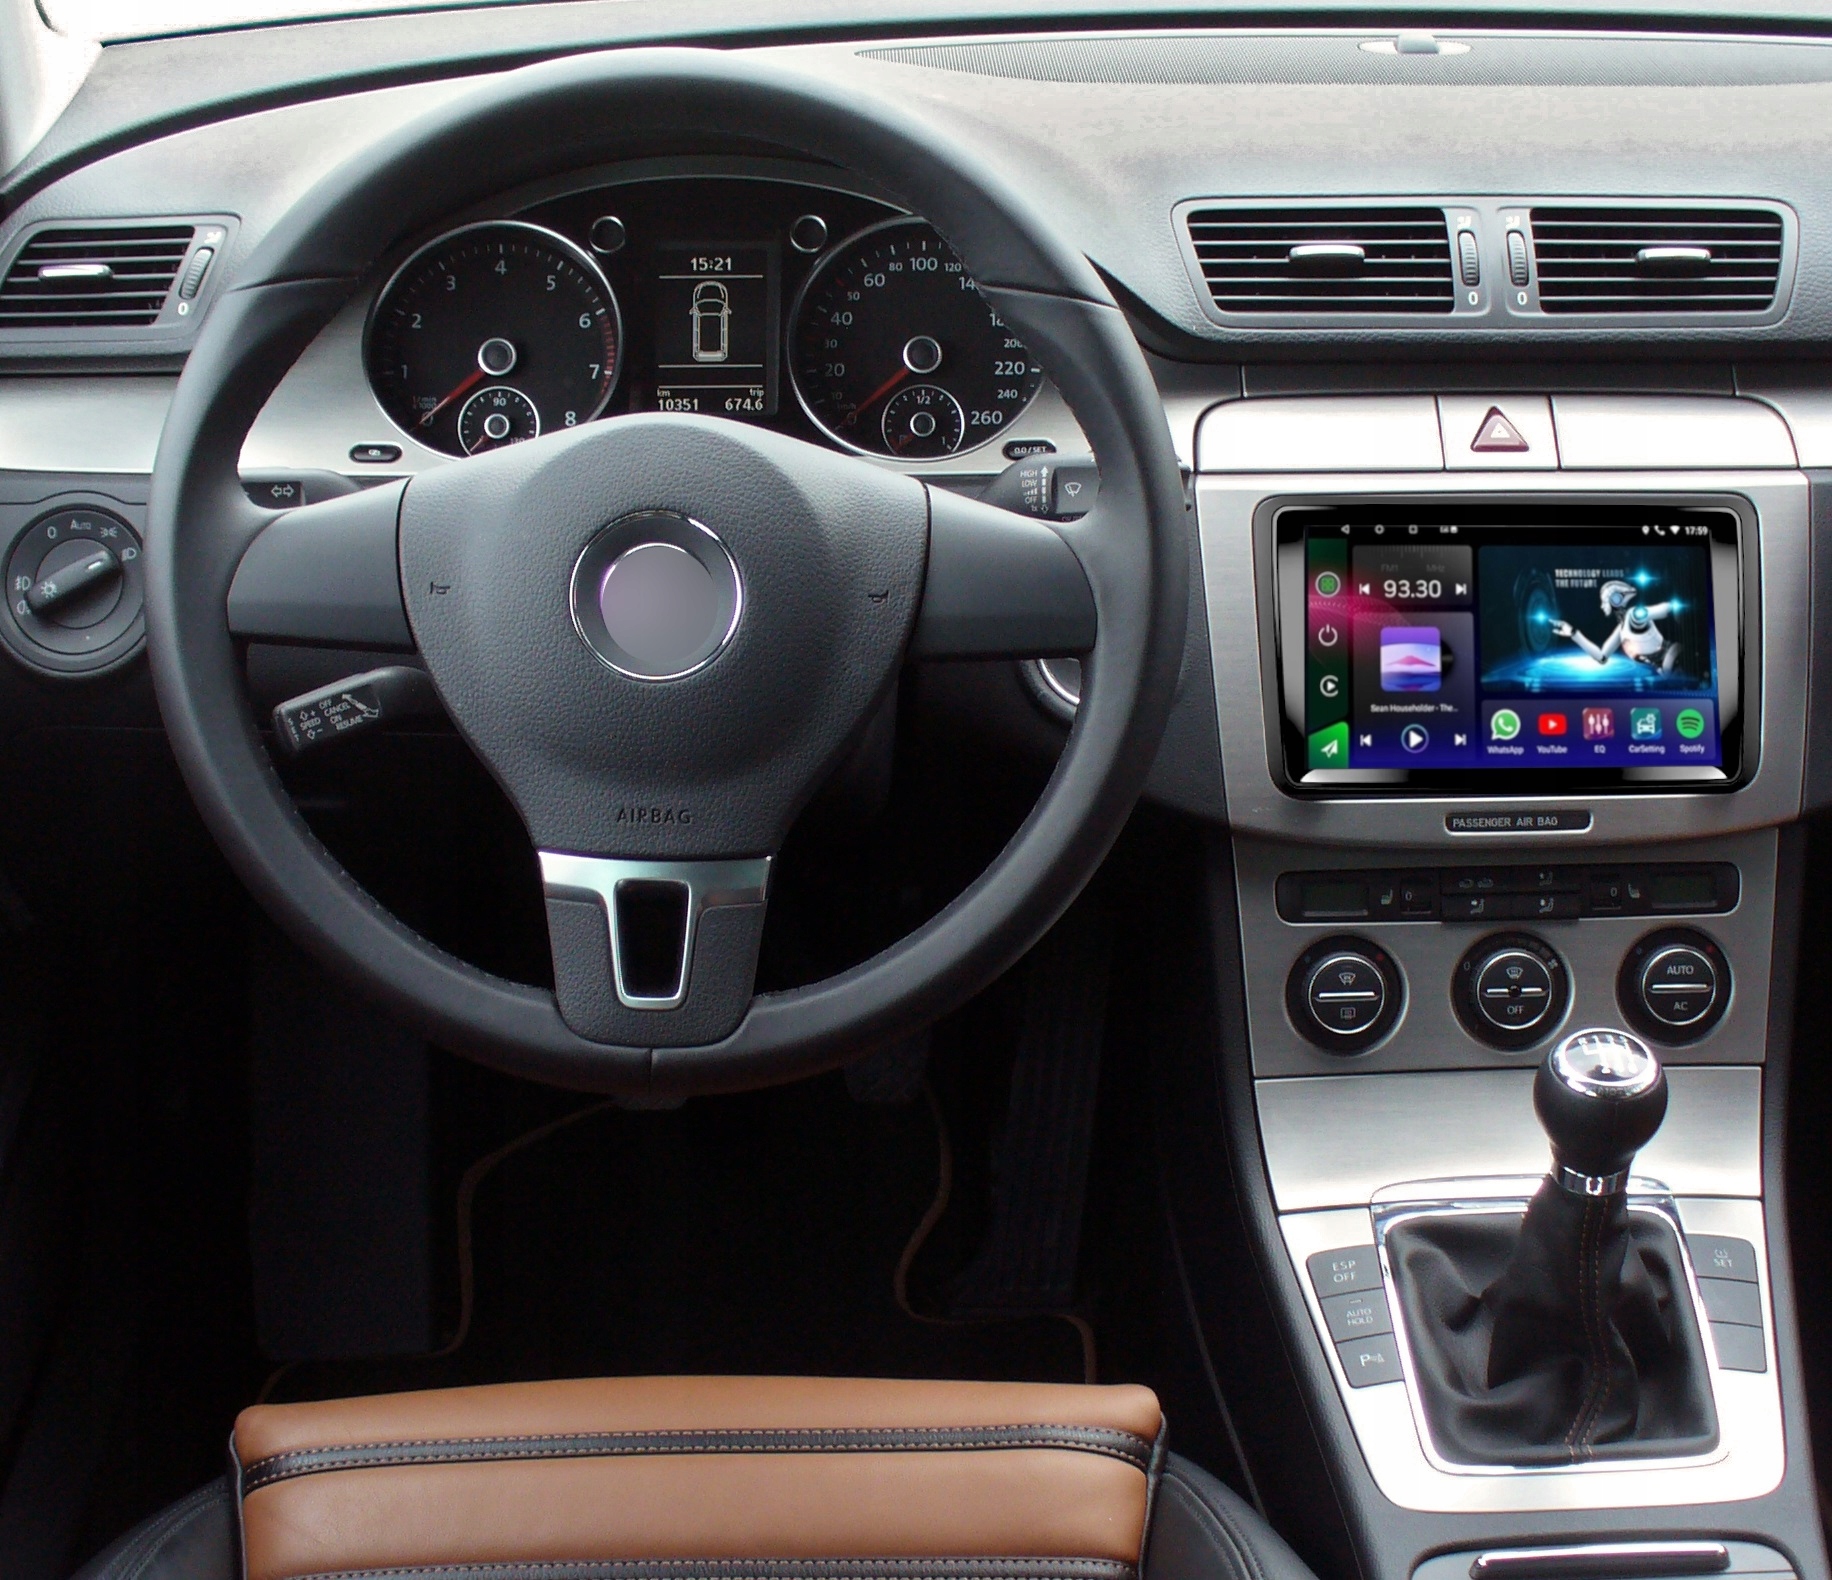 RADIO GPS ANDROID AUTO CARPLAY SKODA FABIA OCTAVIA Funkcje ekran dotykowy korektor dźwięku odtwarzanie muzyki z iPhone'a/iPoda